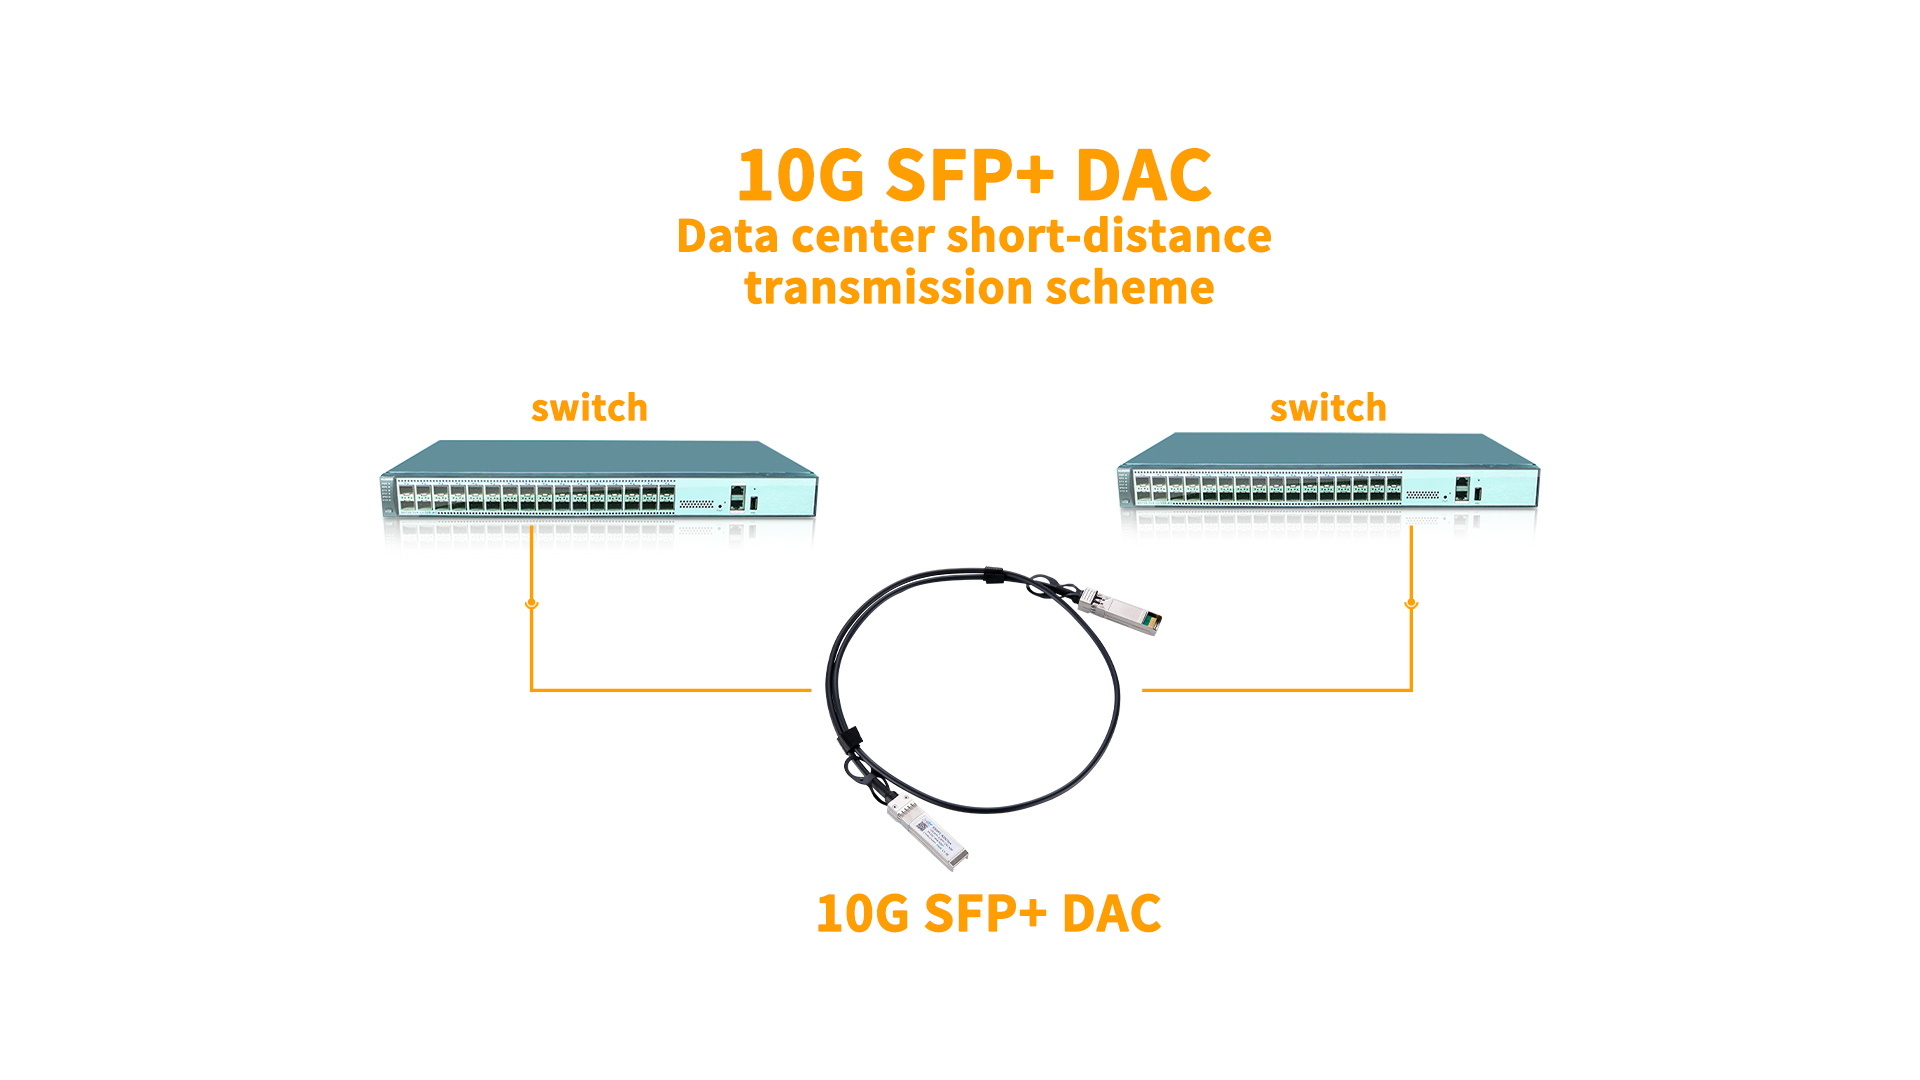 Кабель 10g sfp dac кабельное решение для передачи данных на короткие расстояния